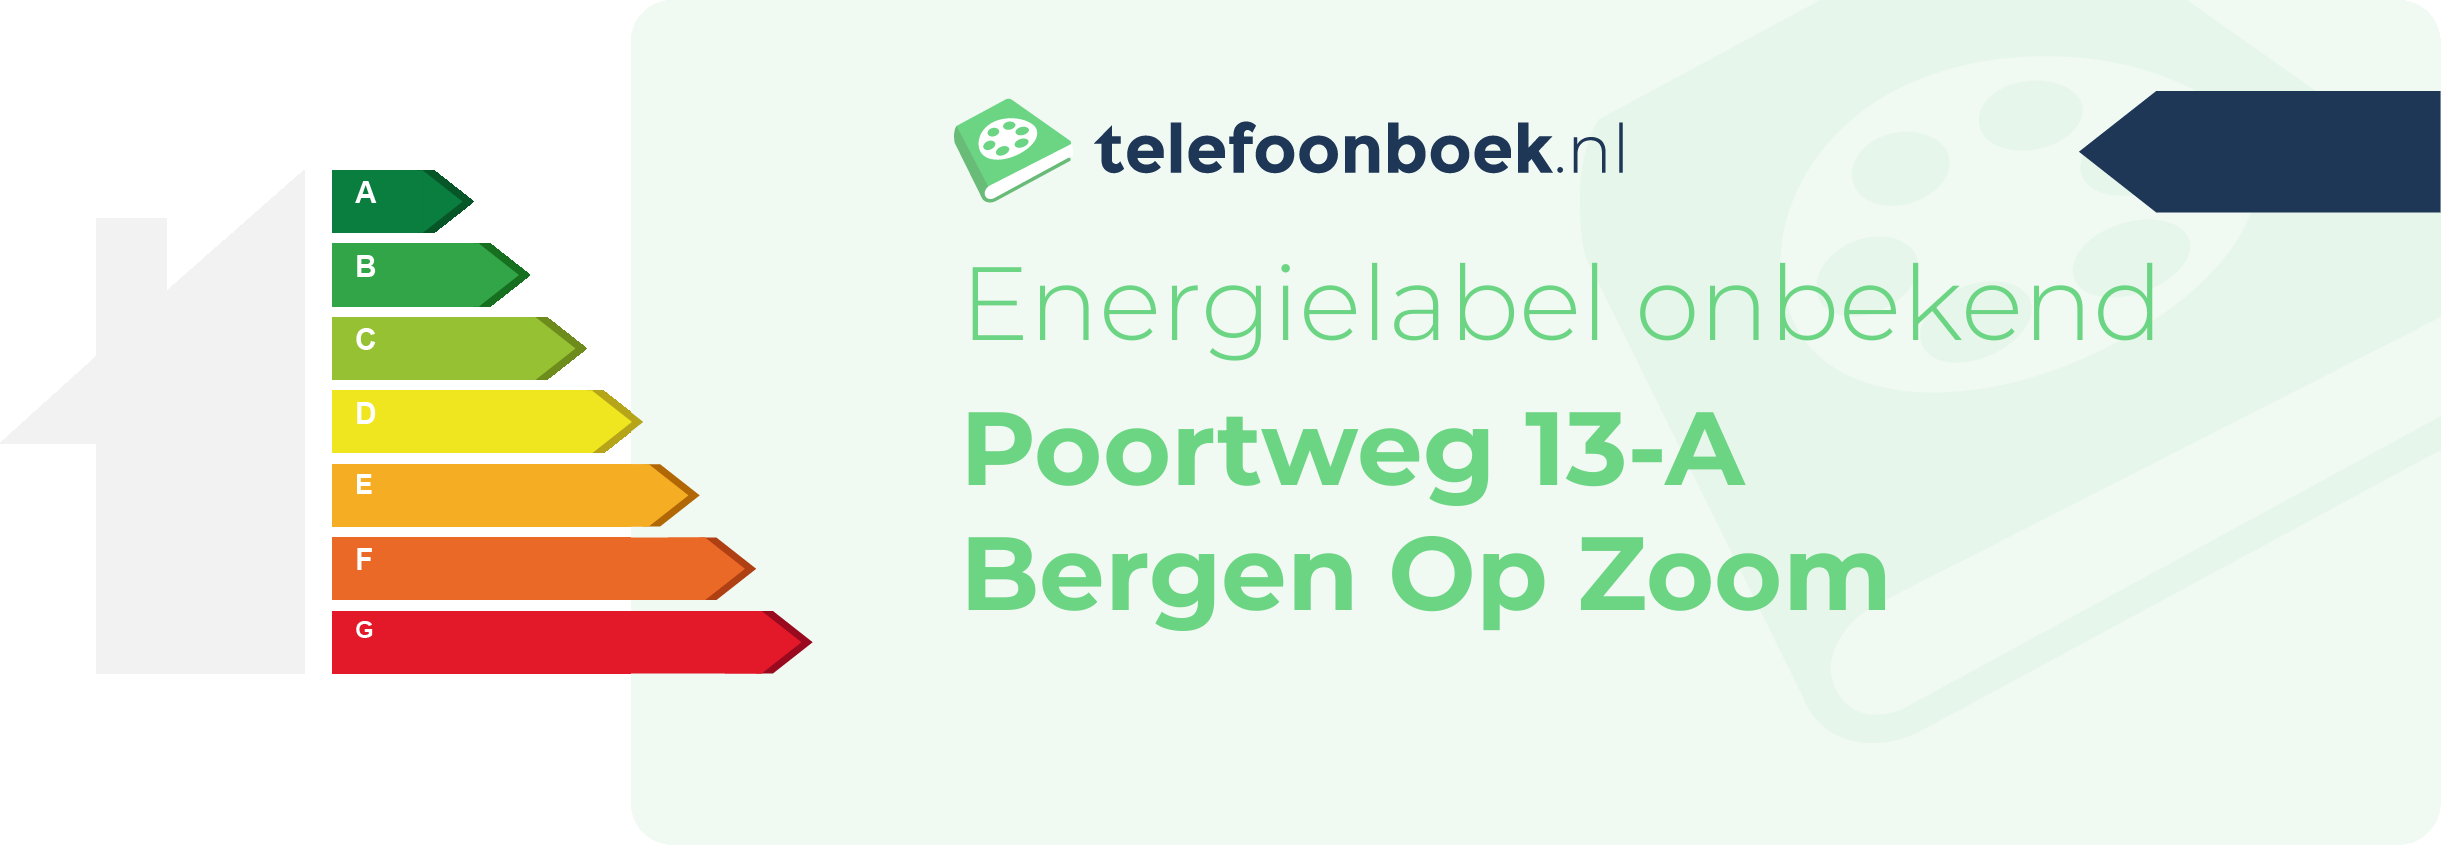 Energielabel Poortweg 13-A Bergen Op Zoom